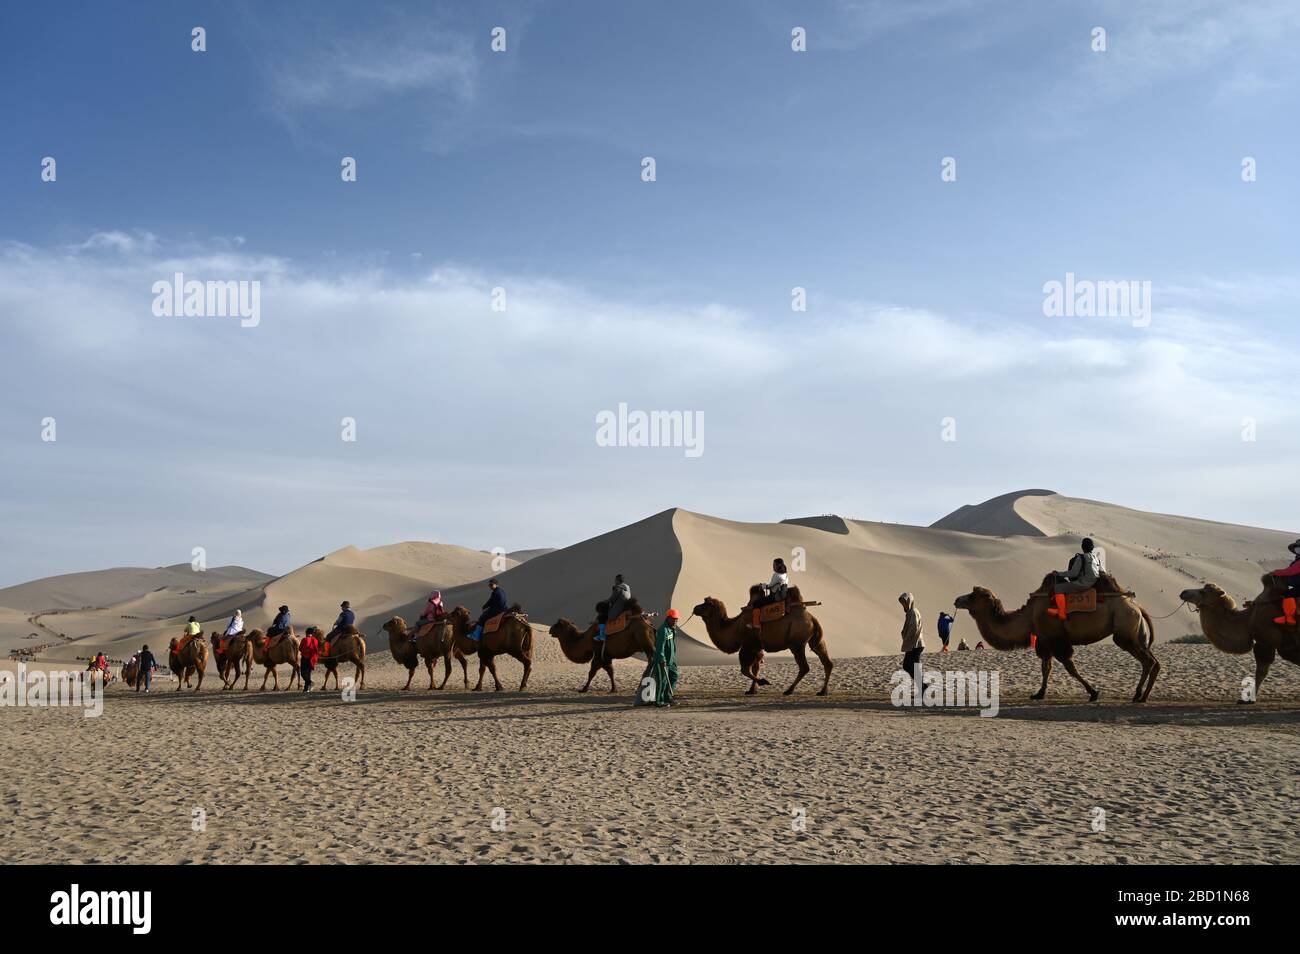 Les touristes sur les chameaux sont conduits par le chant Sand Dunes à Dunhuang, province du Nord-Ouest Gansu, Chine, Asie Banque D'Images